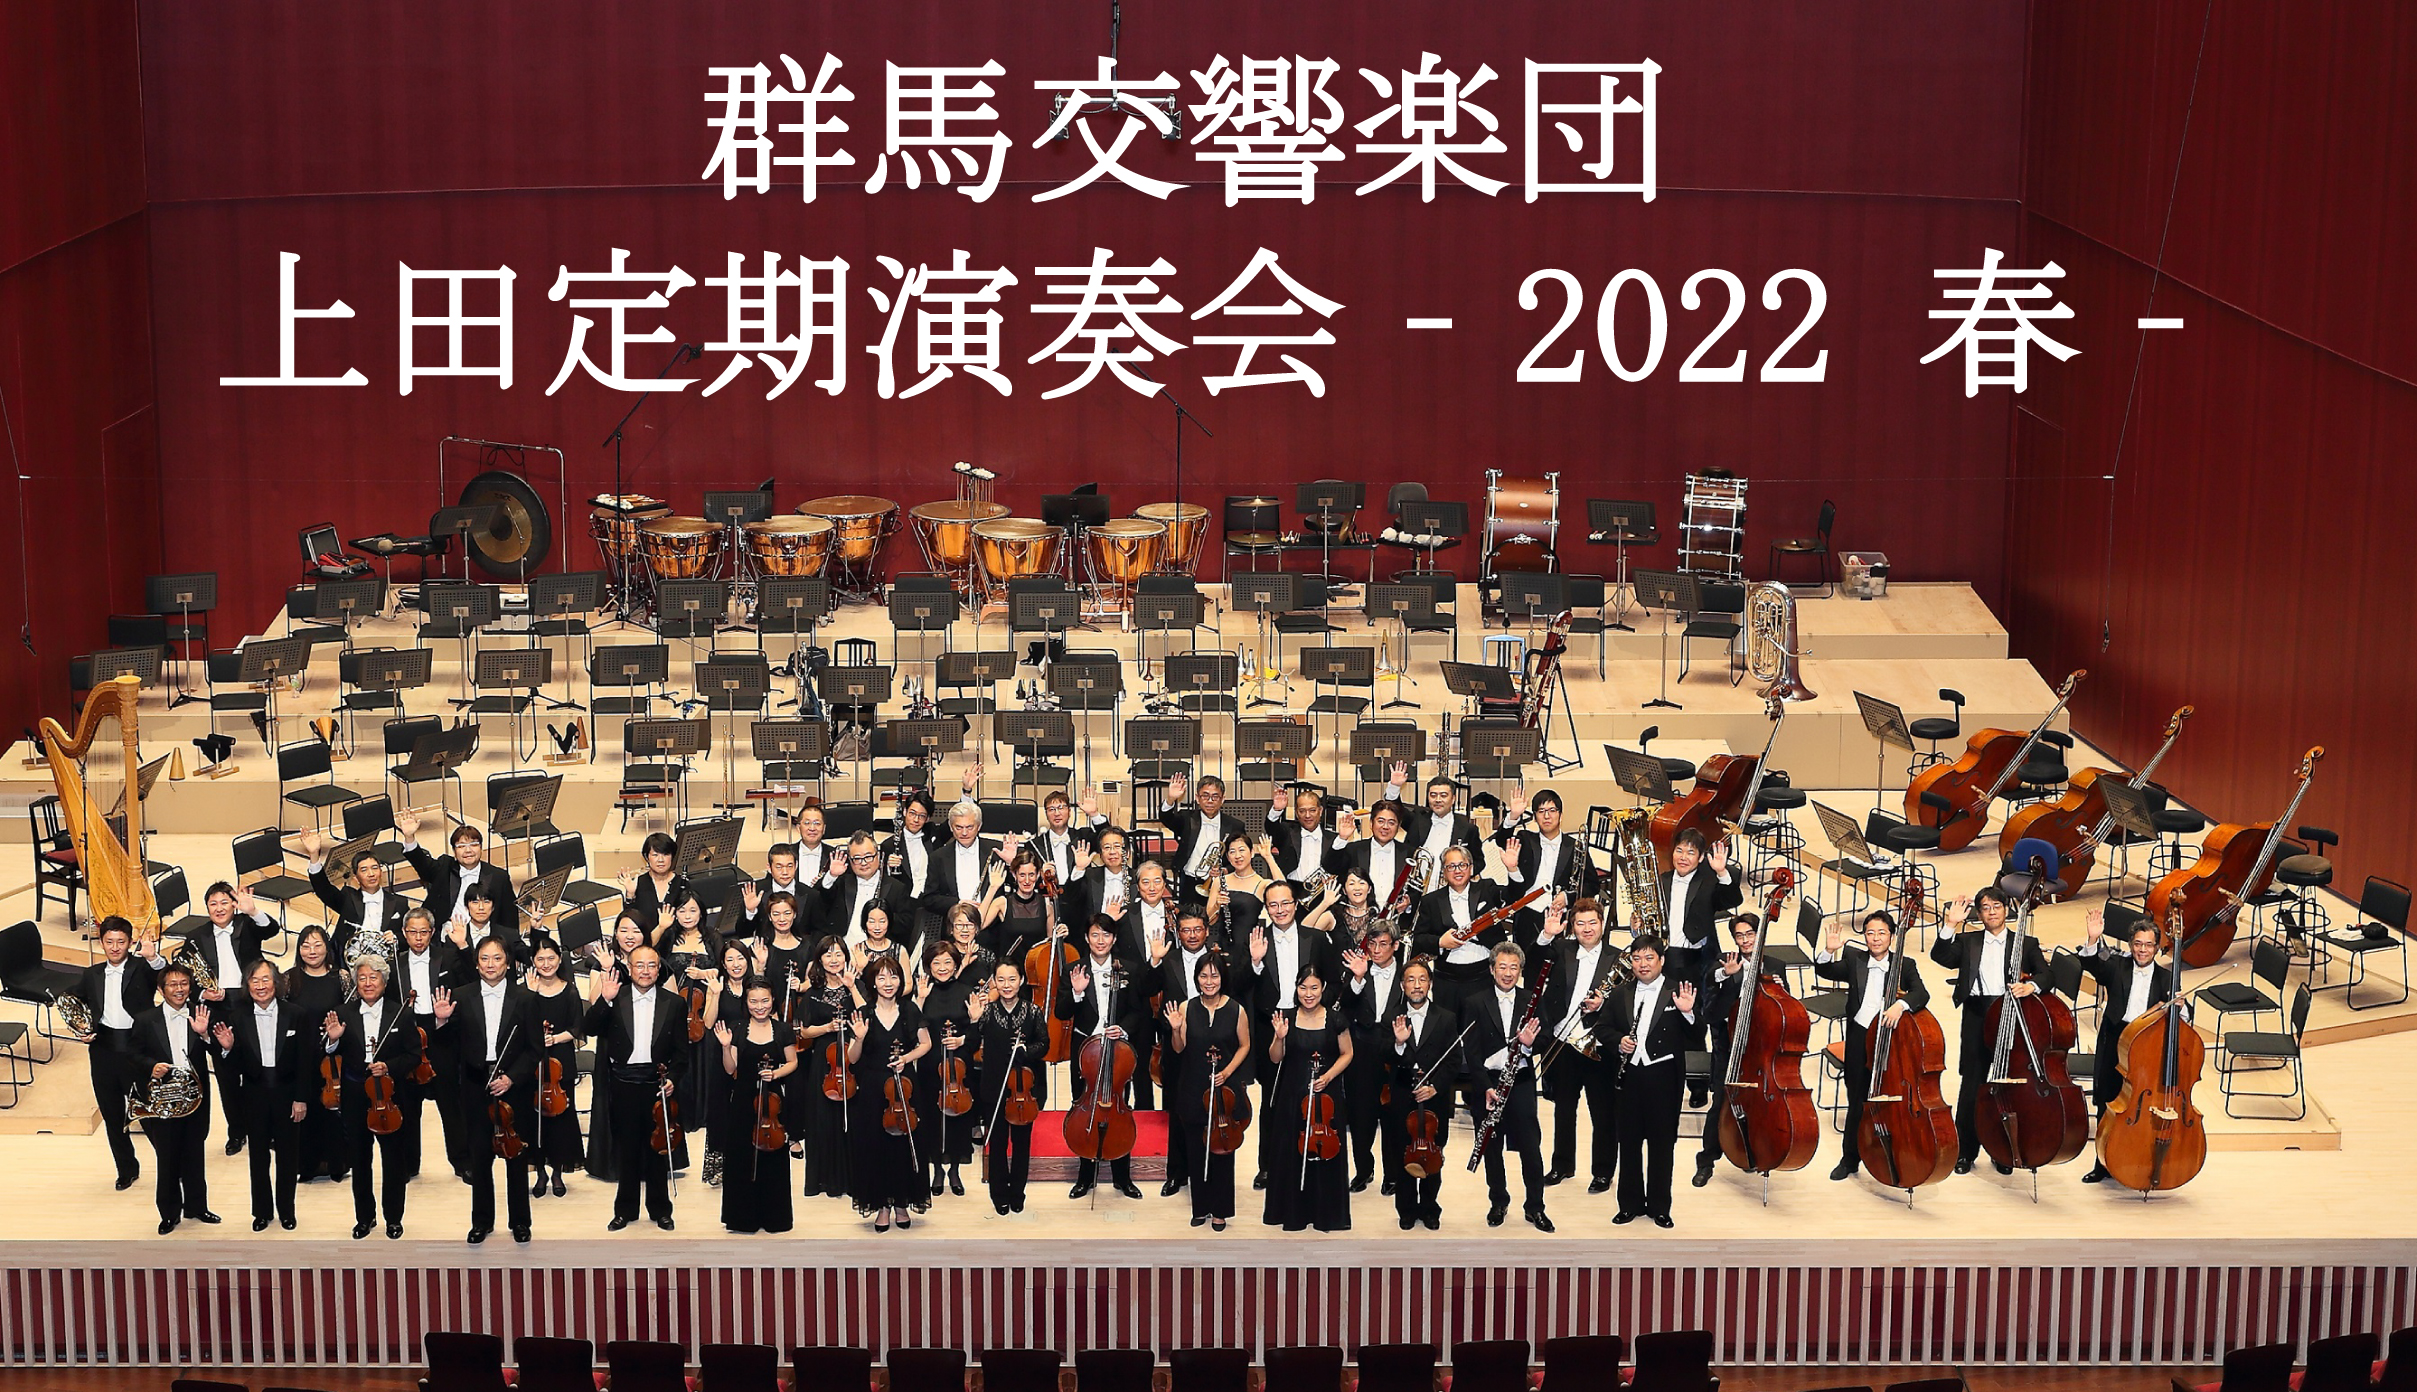 群馬交響楽団 上田定期演奏会－2022春－ 関連プログラム 「群響メンバーによる室内楽演奏会」